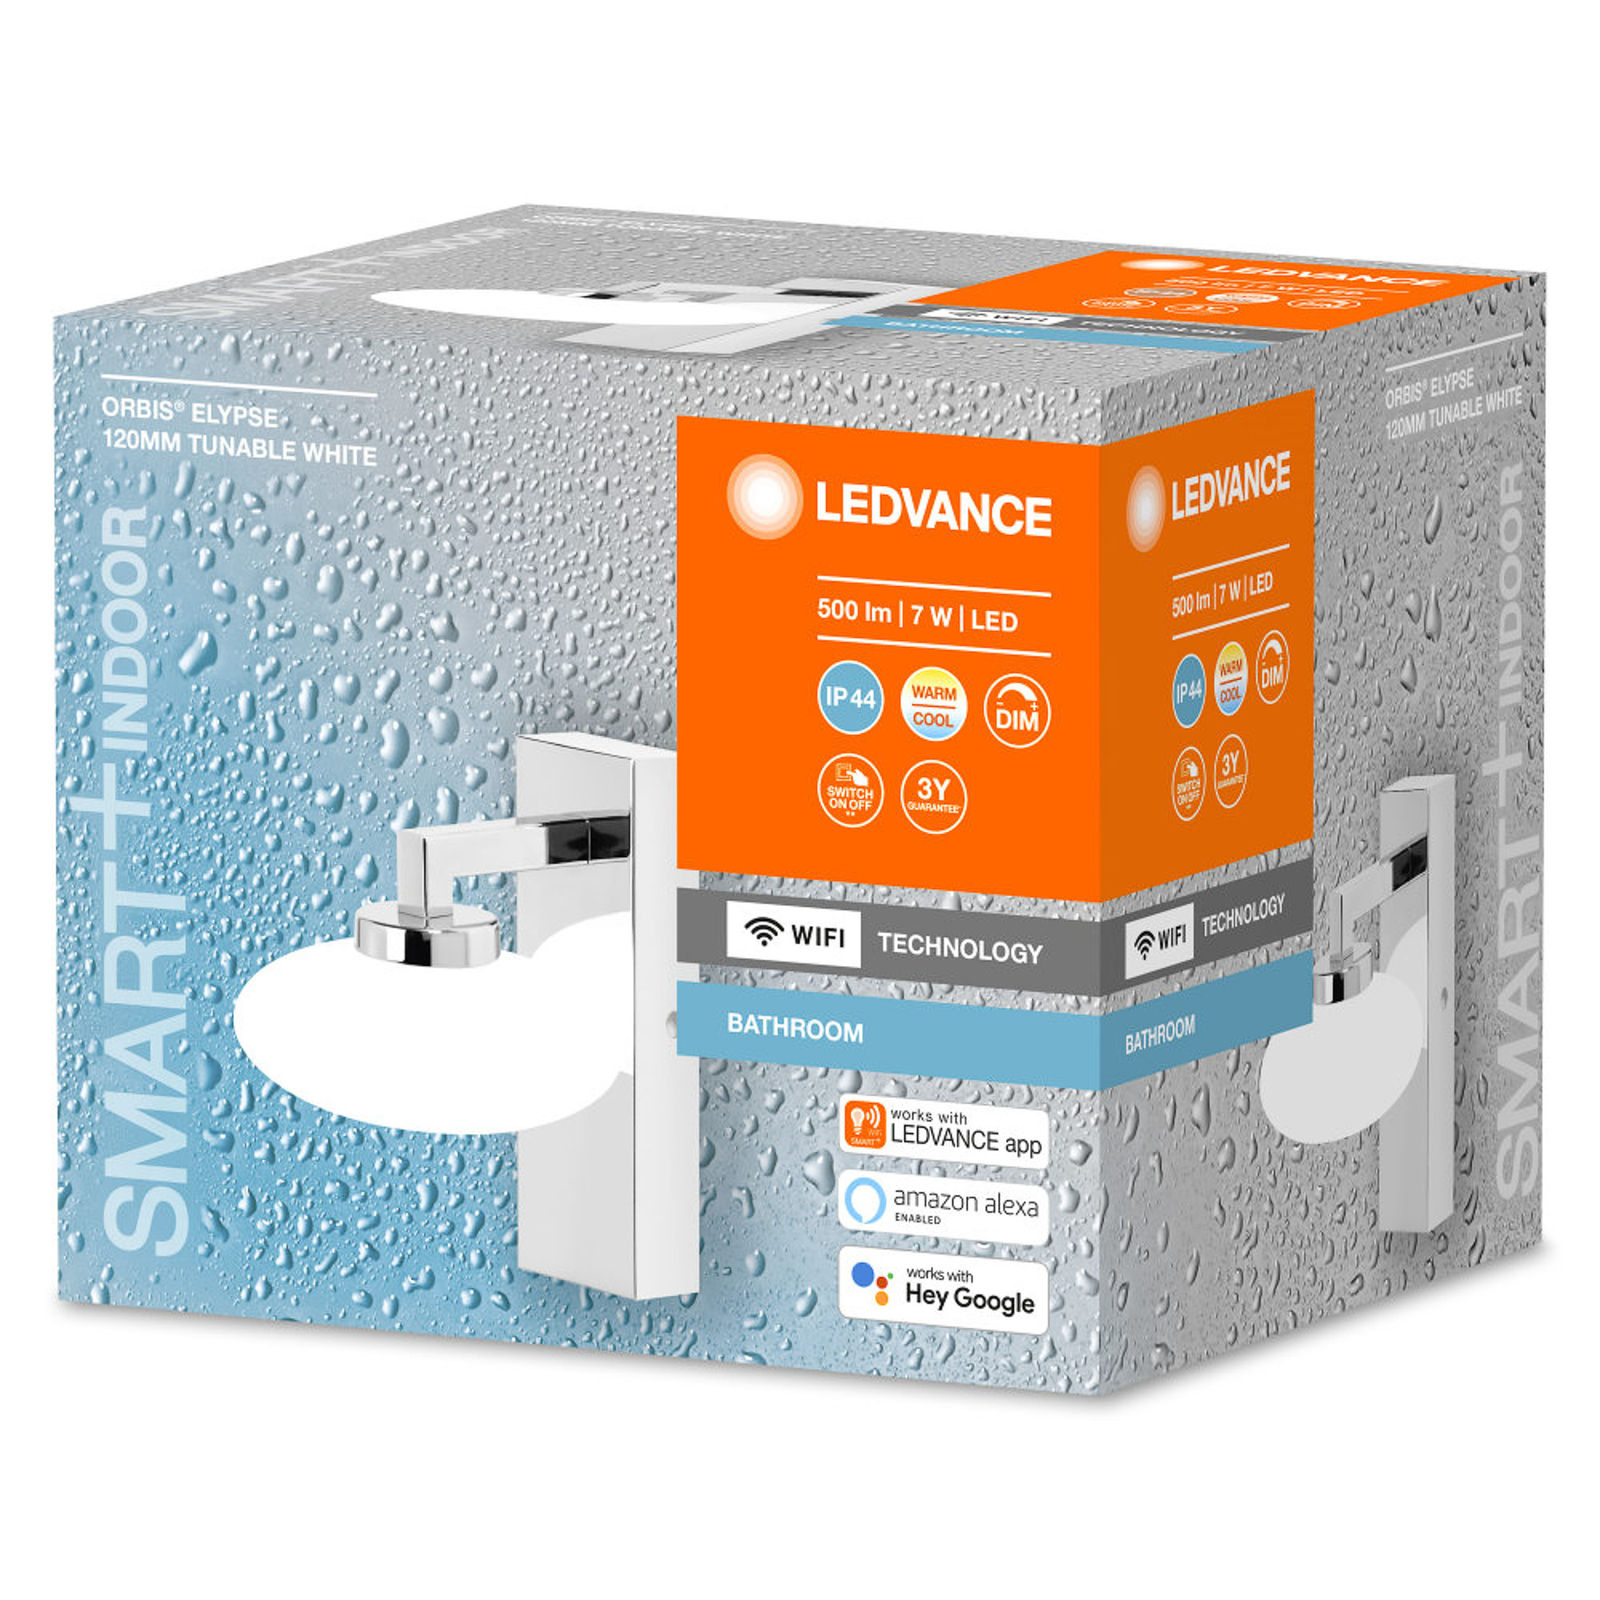 LEDVANCE SMART+ WiFi Orbis Wall Elypse, 1-lamp